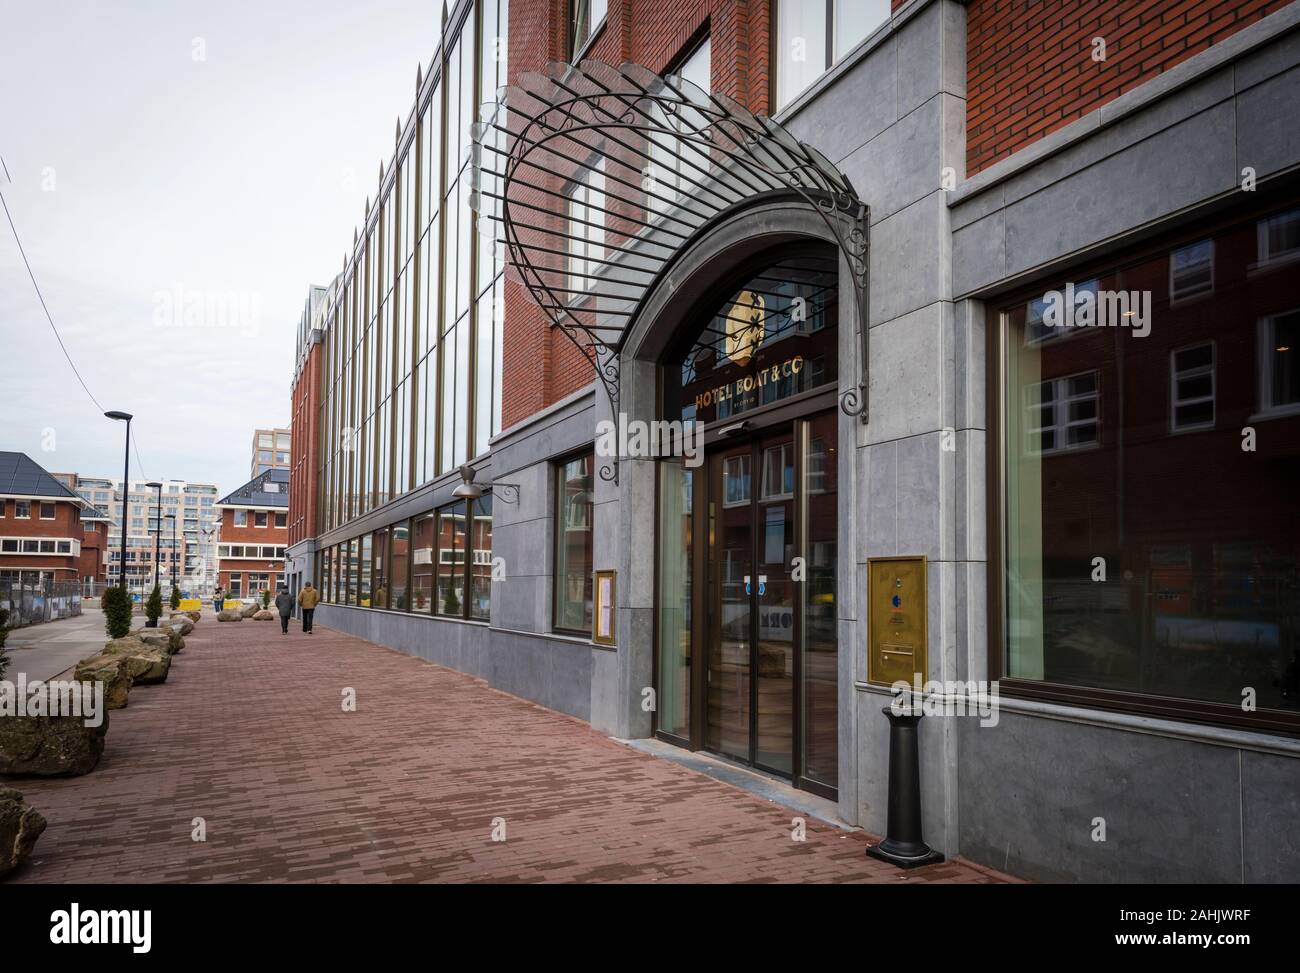 L'entrata all'Hotel Boat & Co a Houthavens, una nuova costruzione zona di Amsterdam. Foto Stock